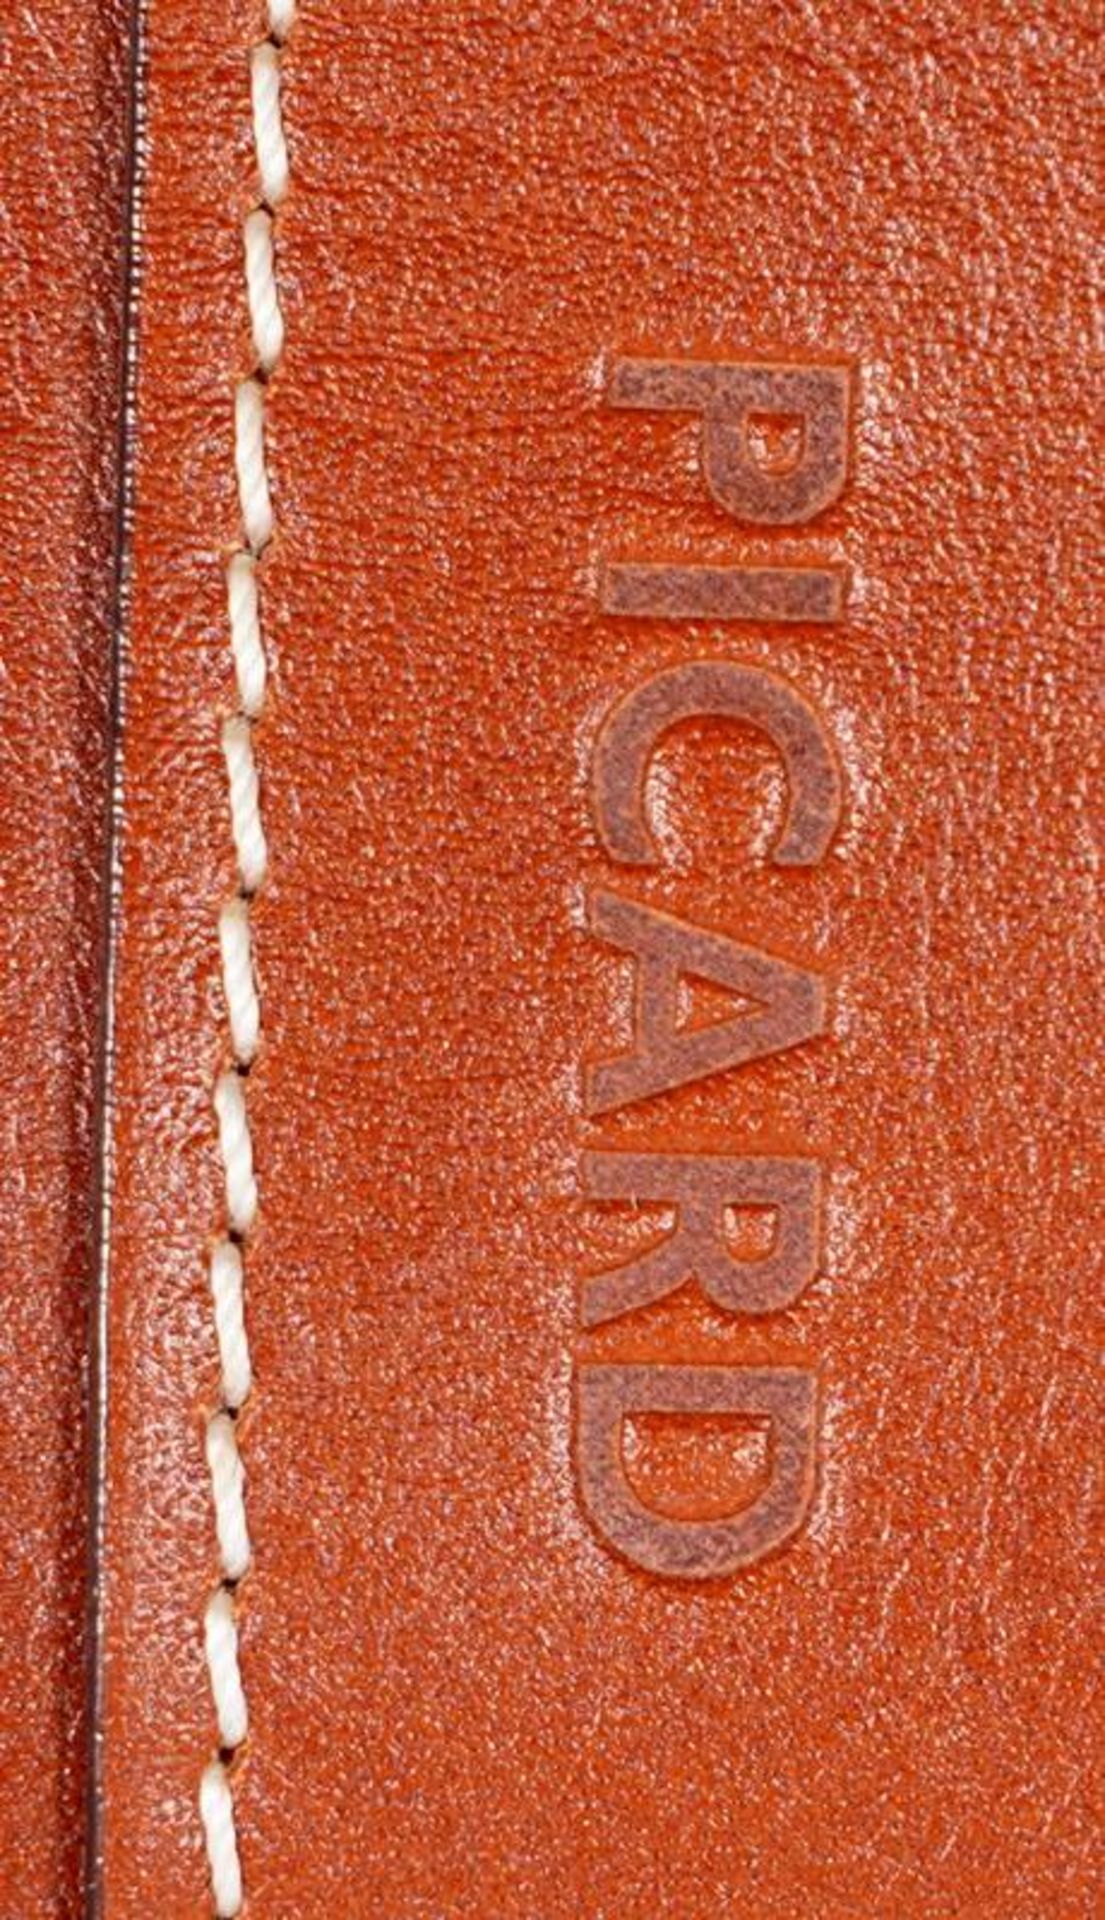 Picard Handbag - Image 4 of 8